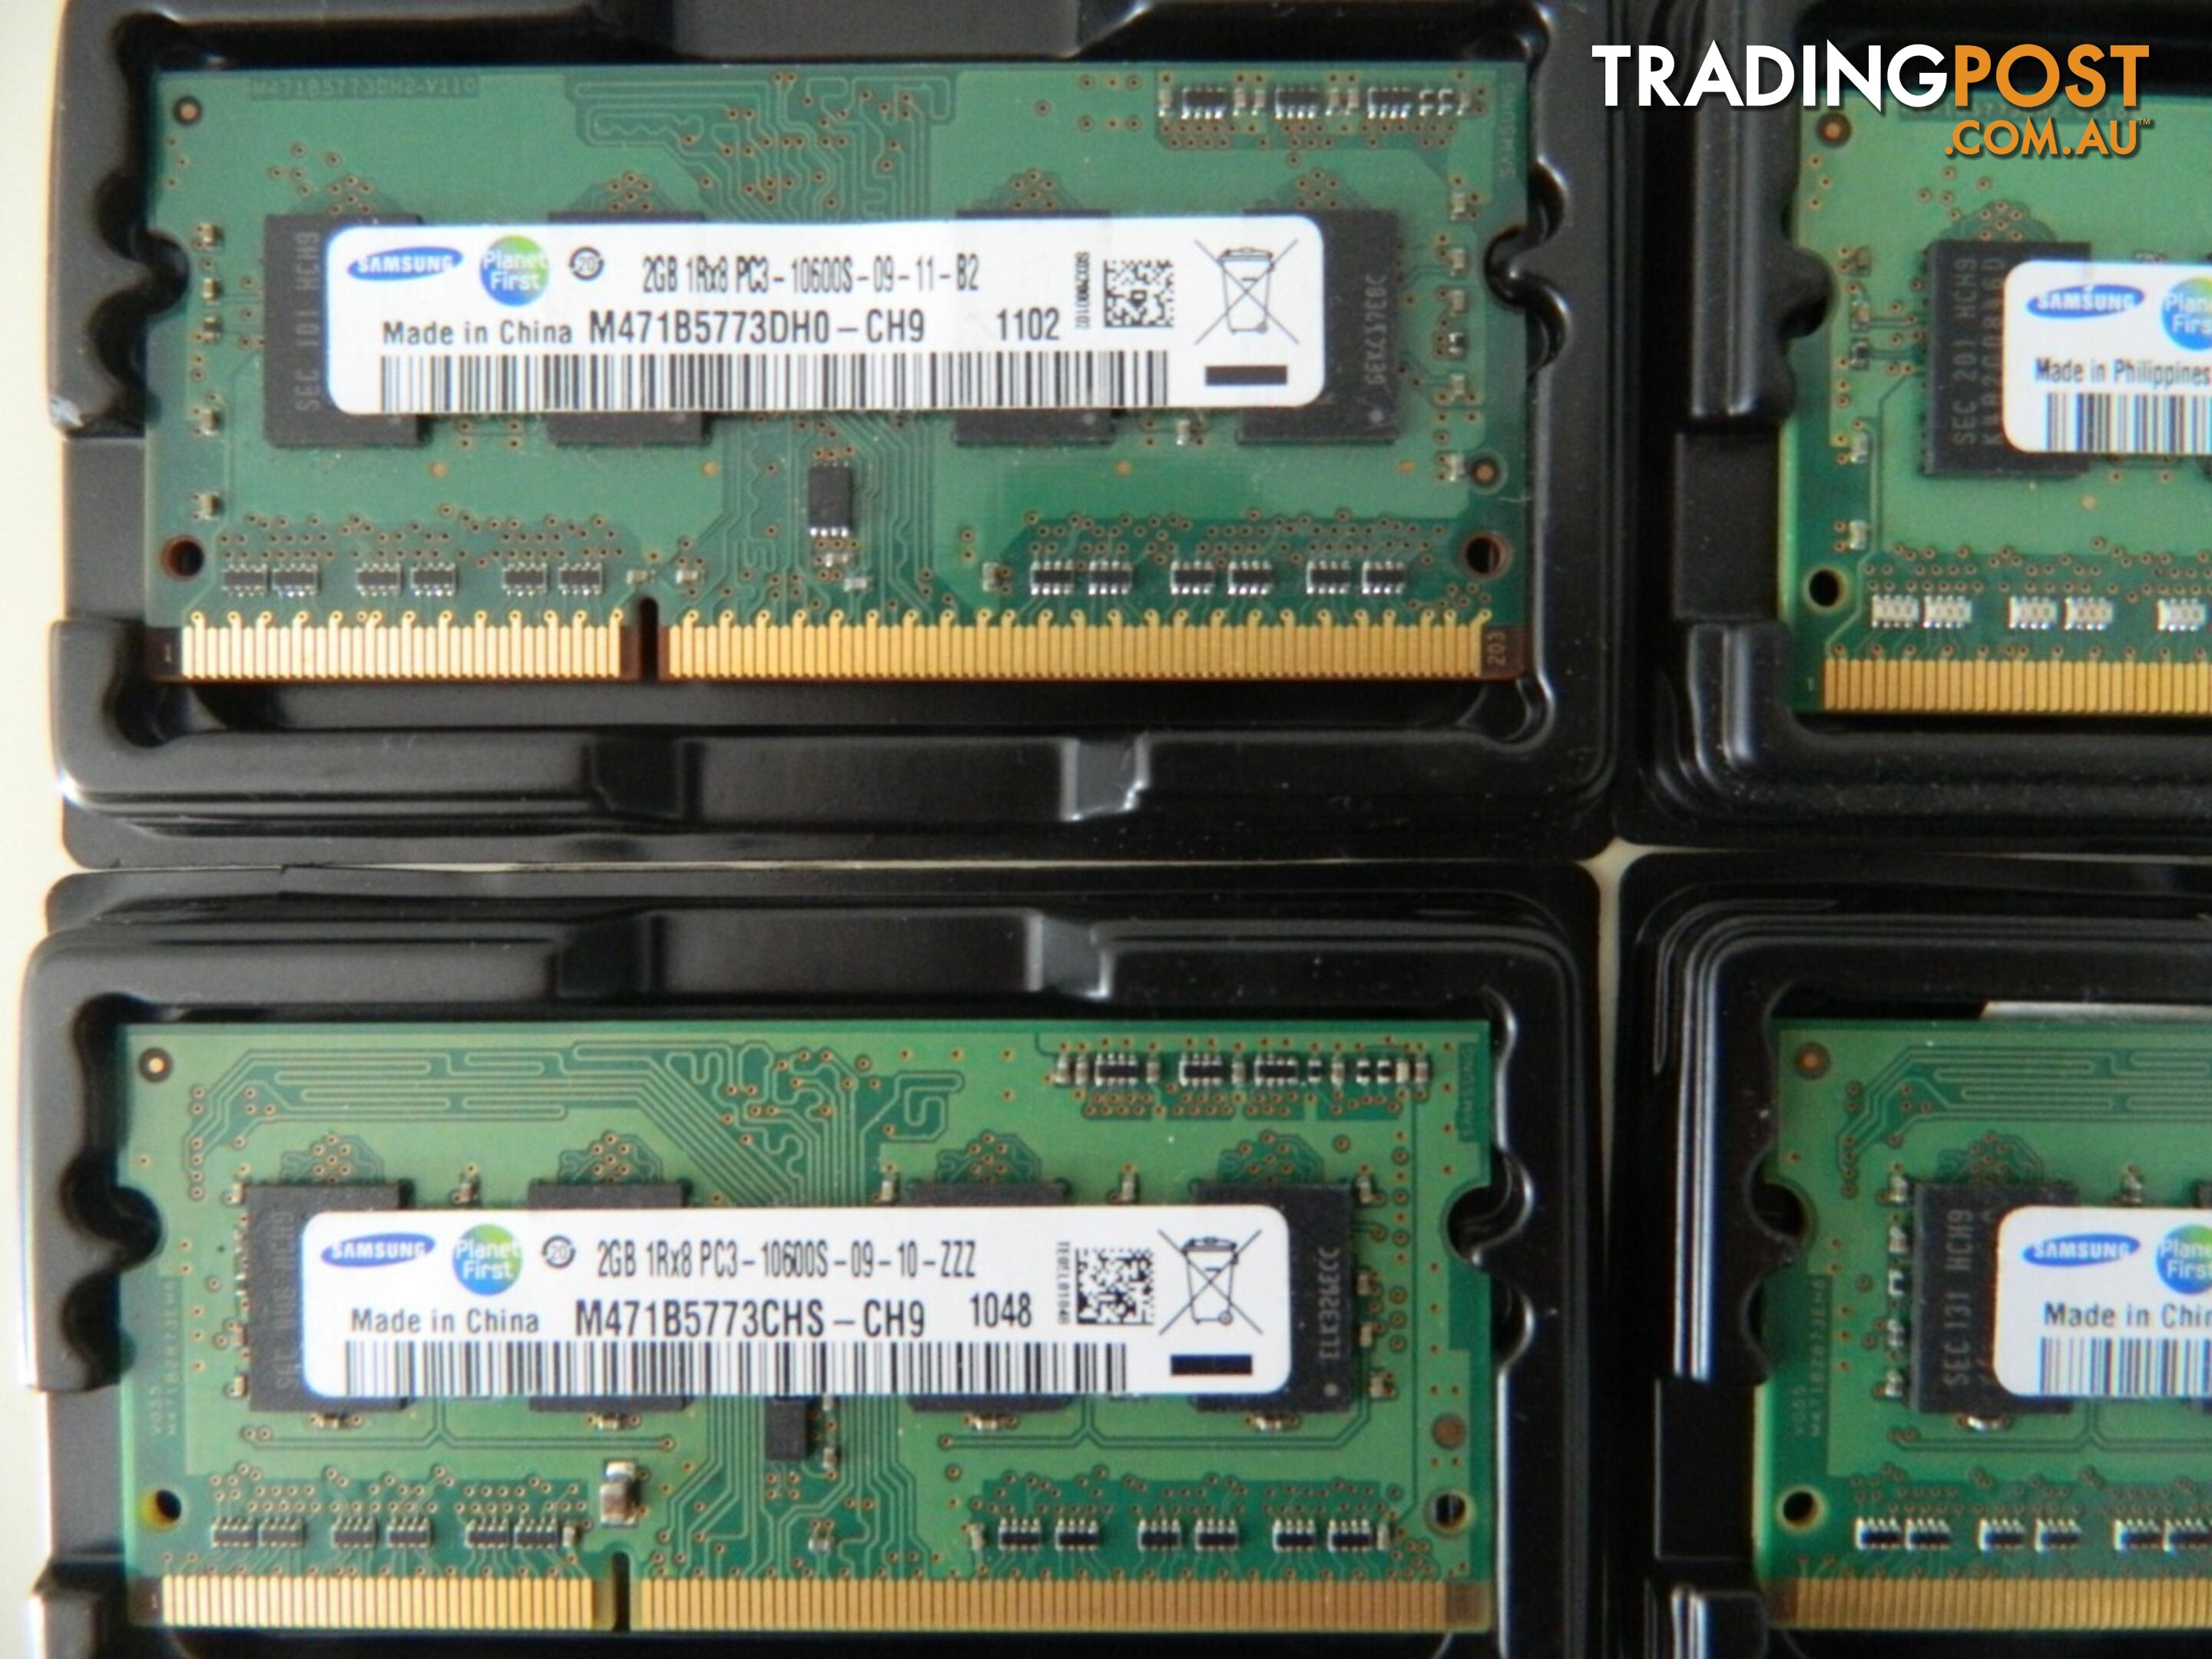 2GB Notebook RAM PC3-8500S/ PC3-10600S